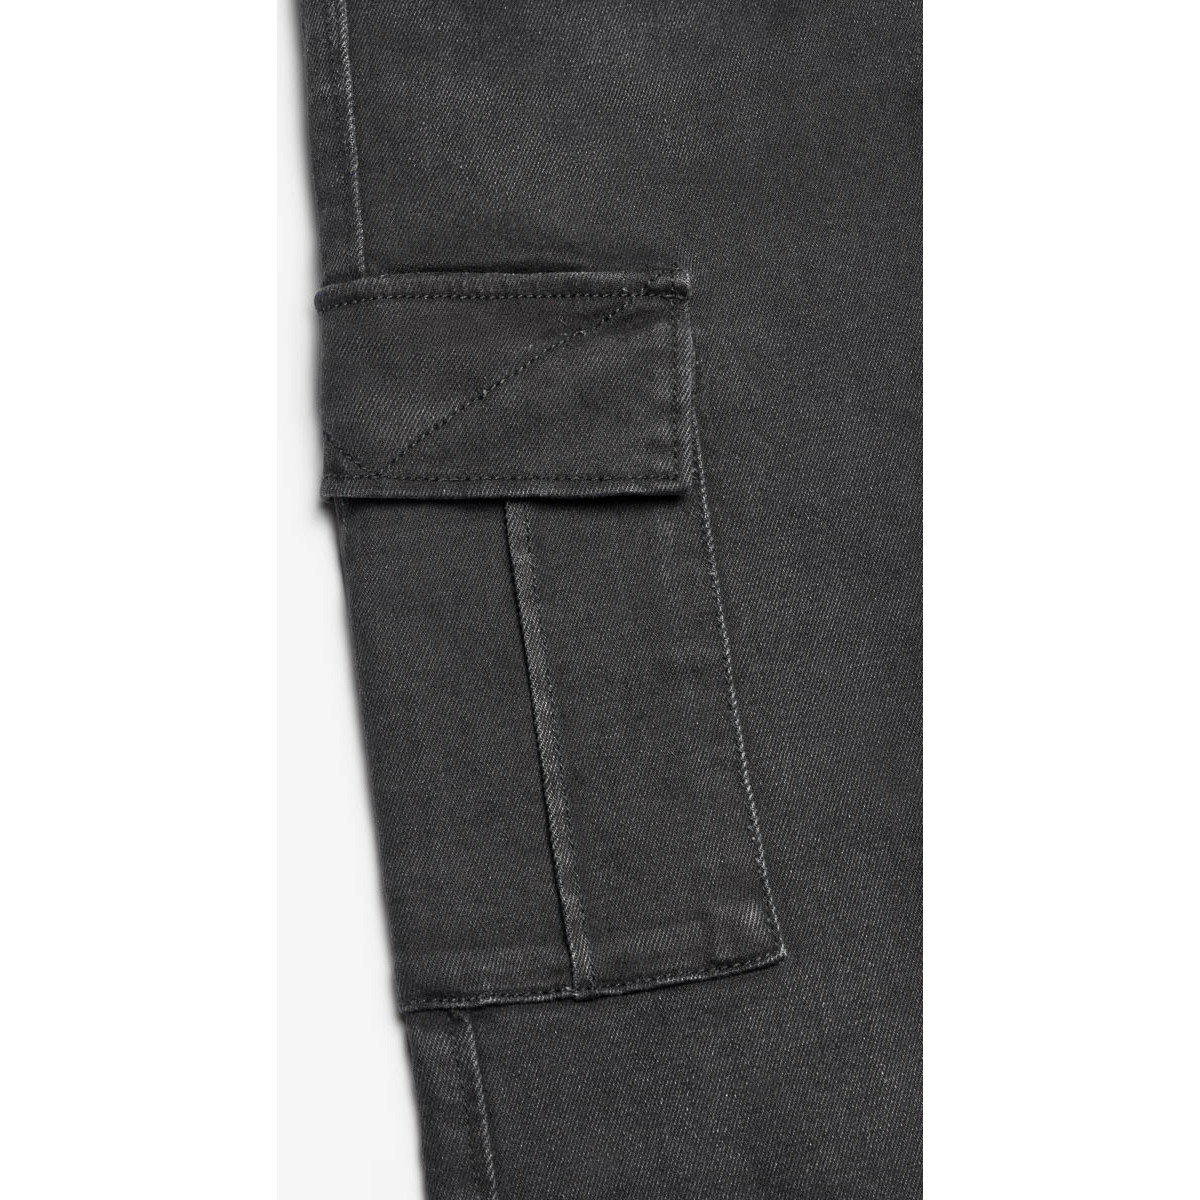 Le Temps des Cerises Noir Cure 800/16 regular jeans noir WhSuB6pP